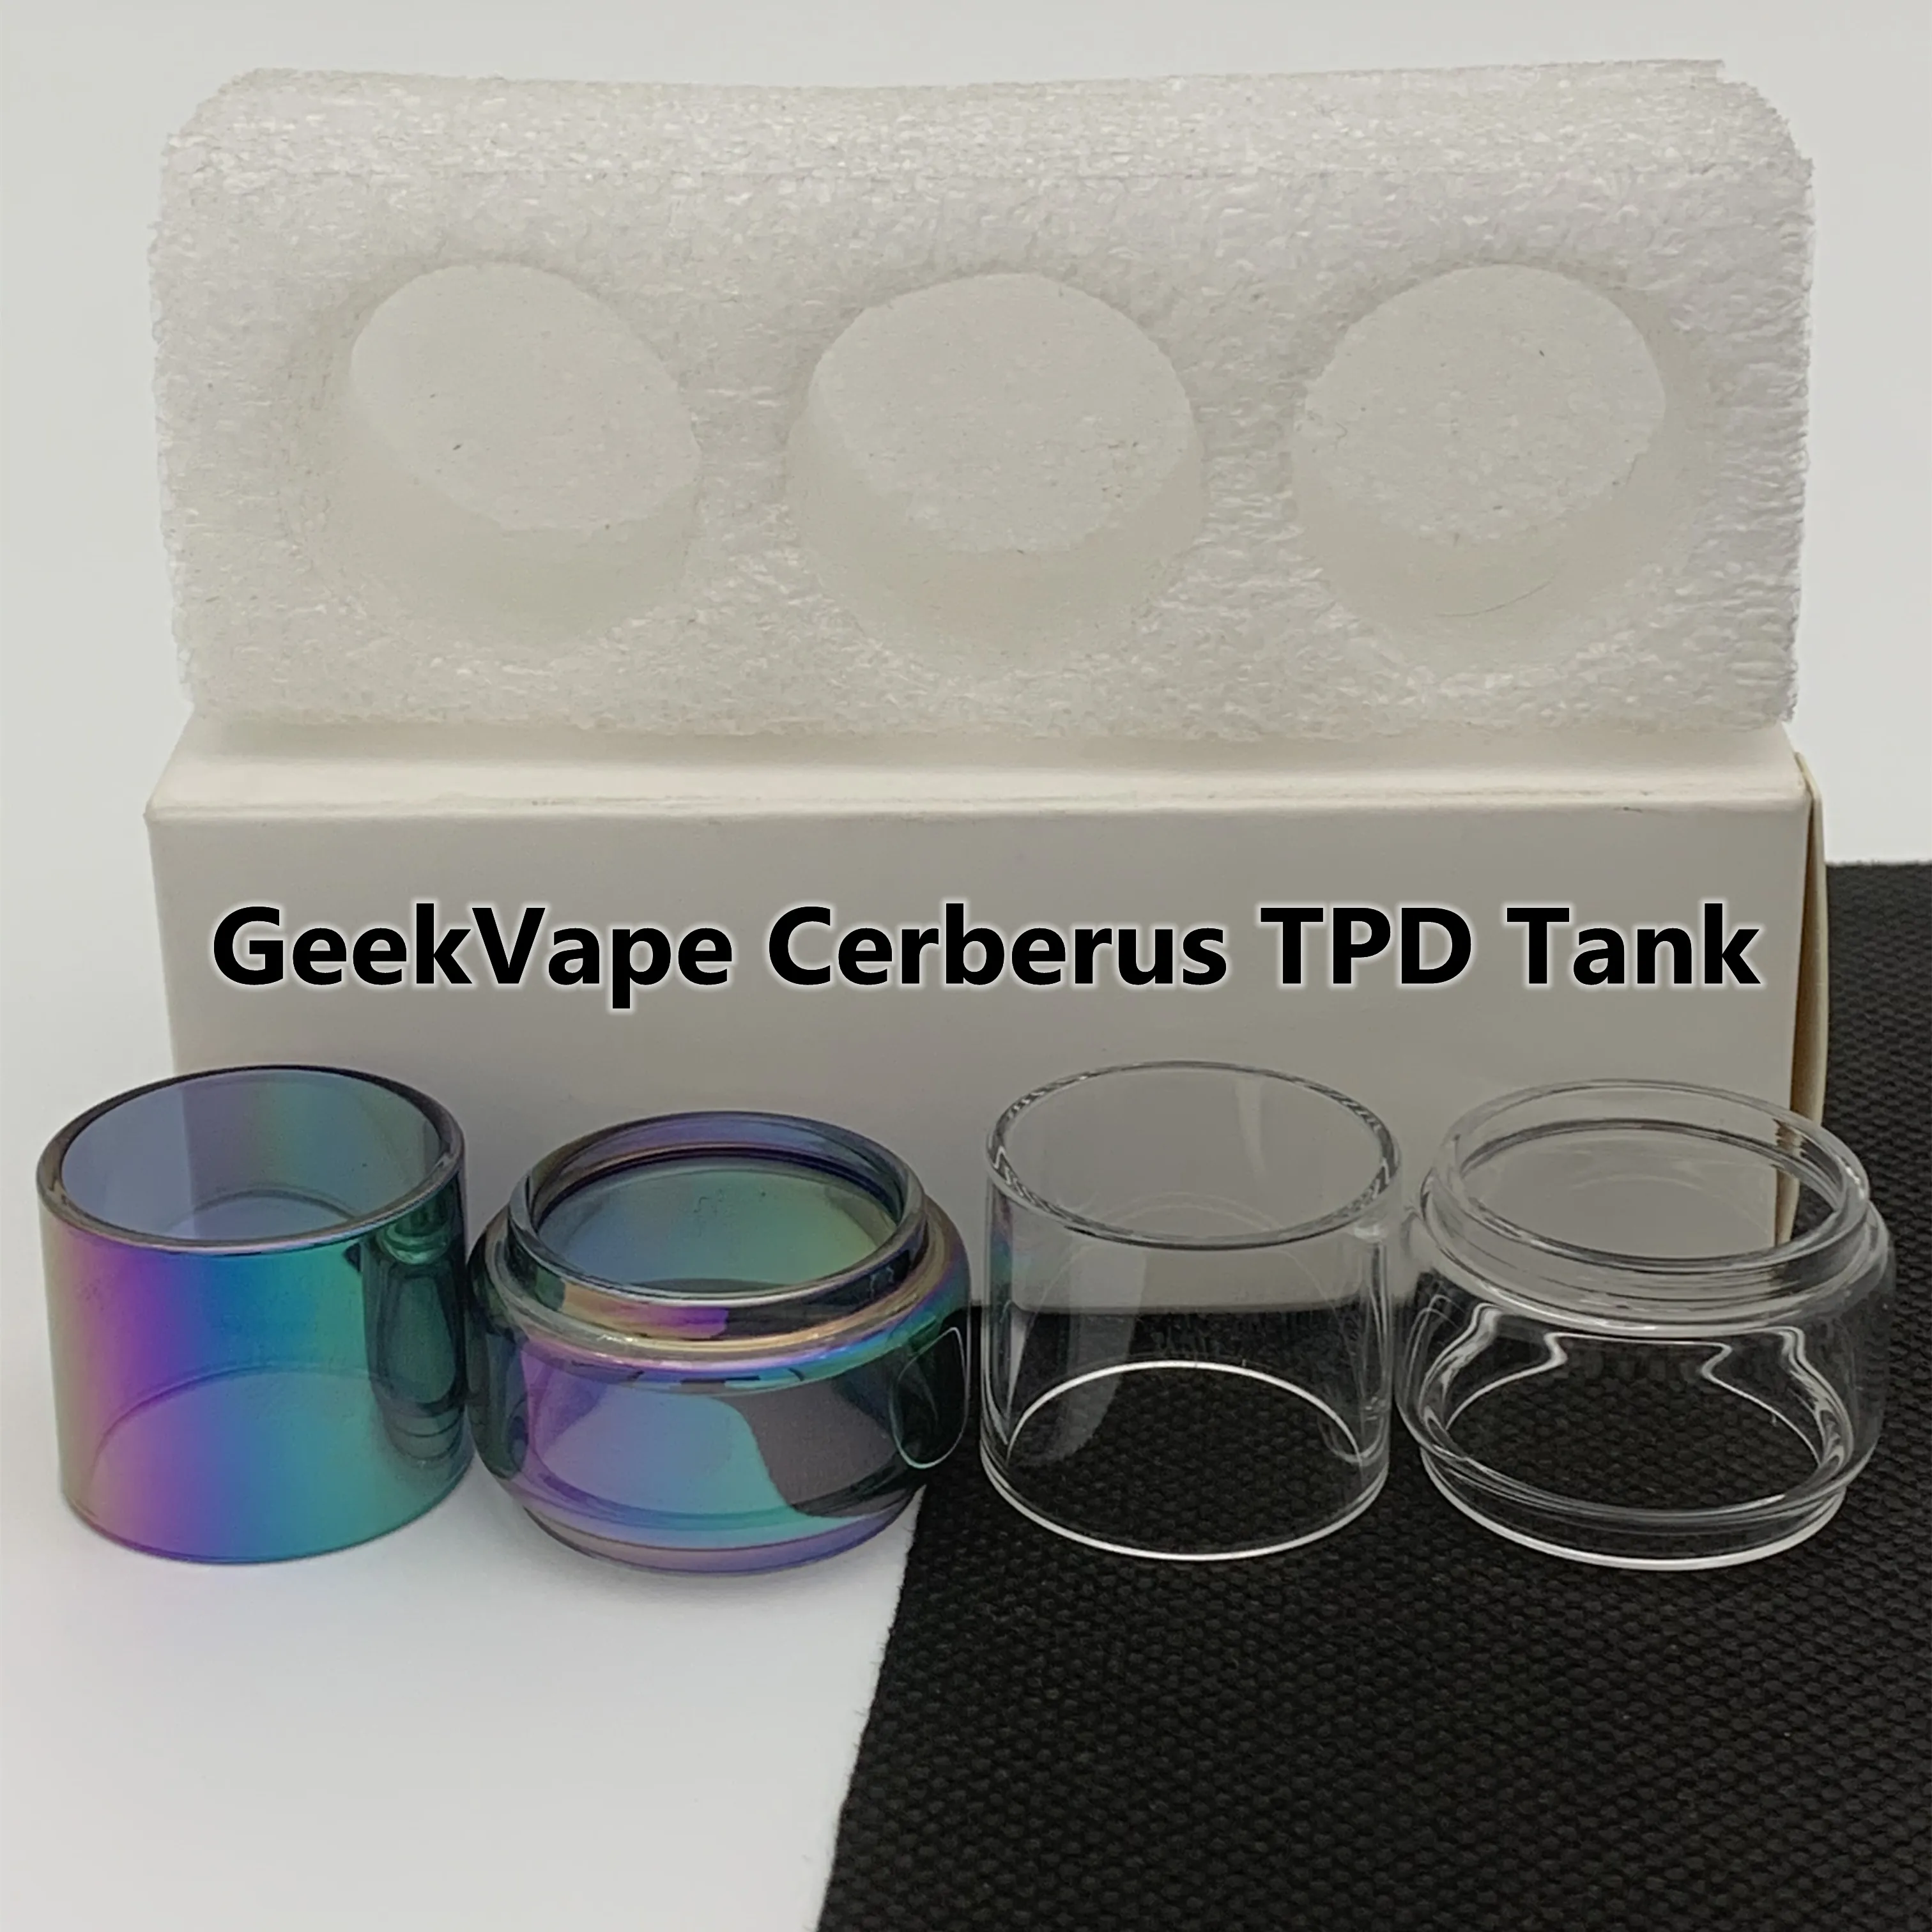 Bolsa Cerberus TPD Tubo Normal Tubo de vidrio de repuesto transparente Tubo recto estándar 3 unids/caja paquete al por menor